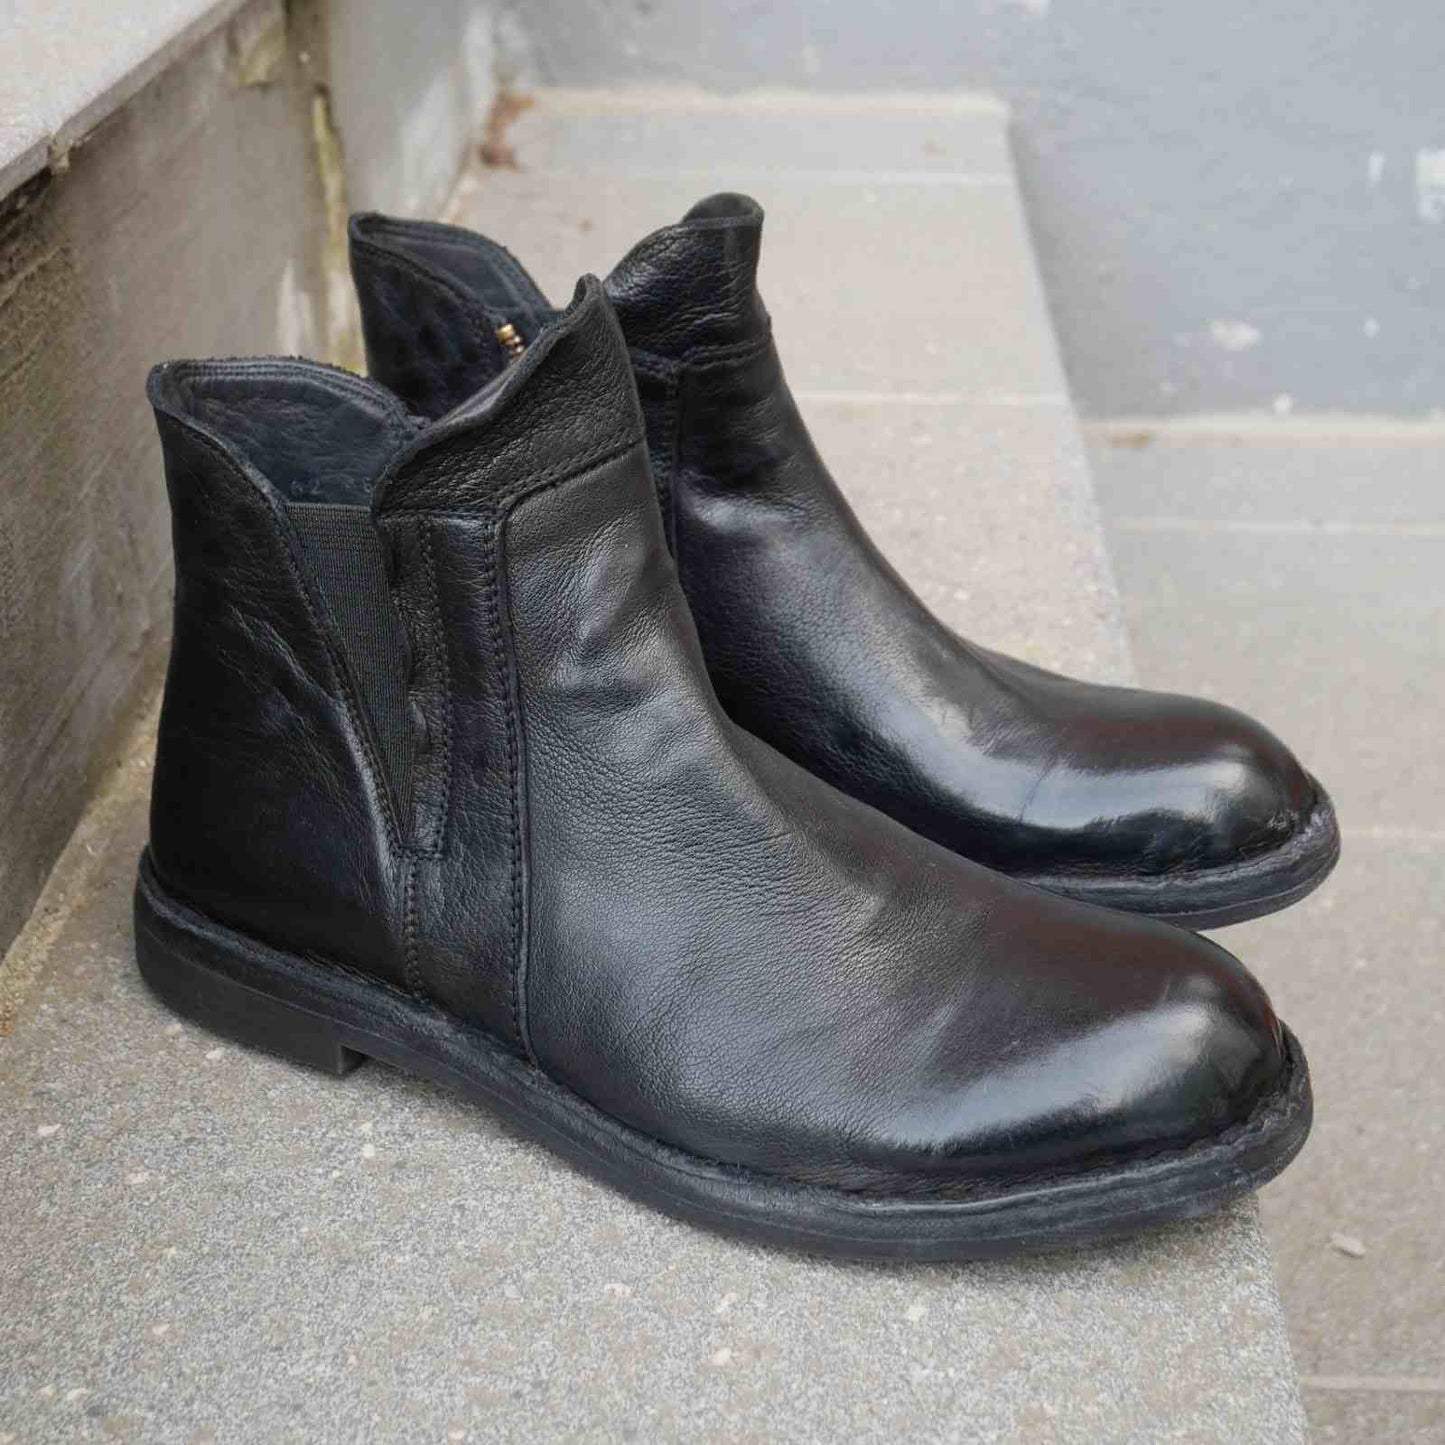 Korte støvler i sort skind fra Bubetti